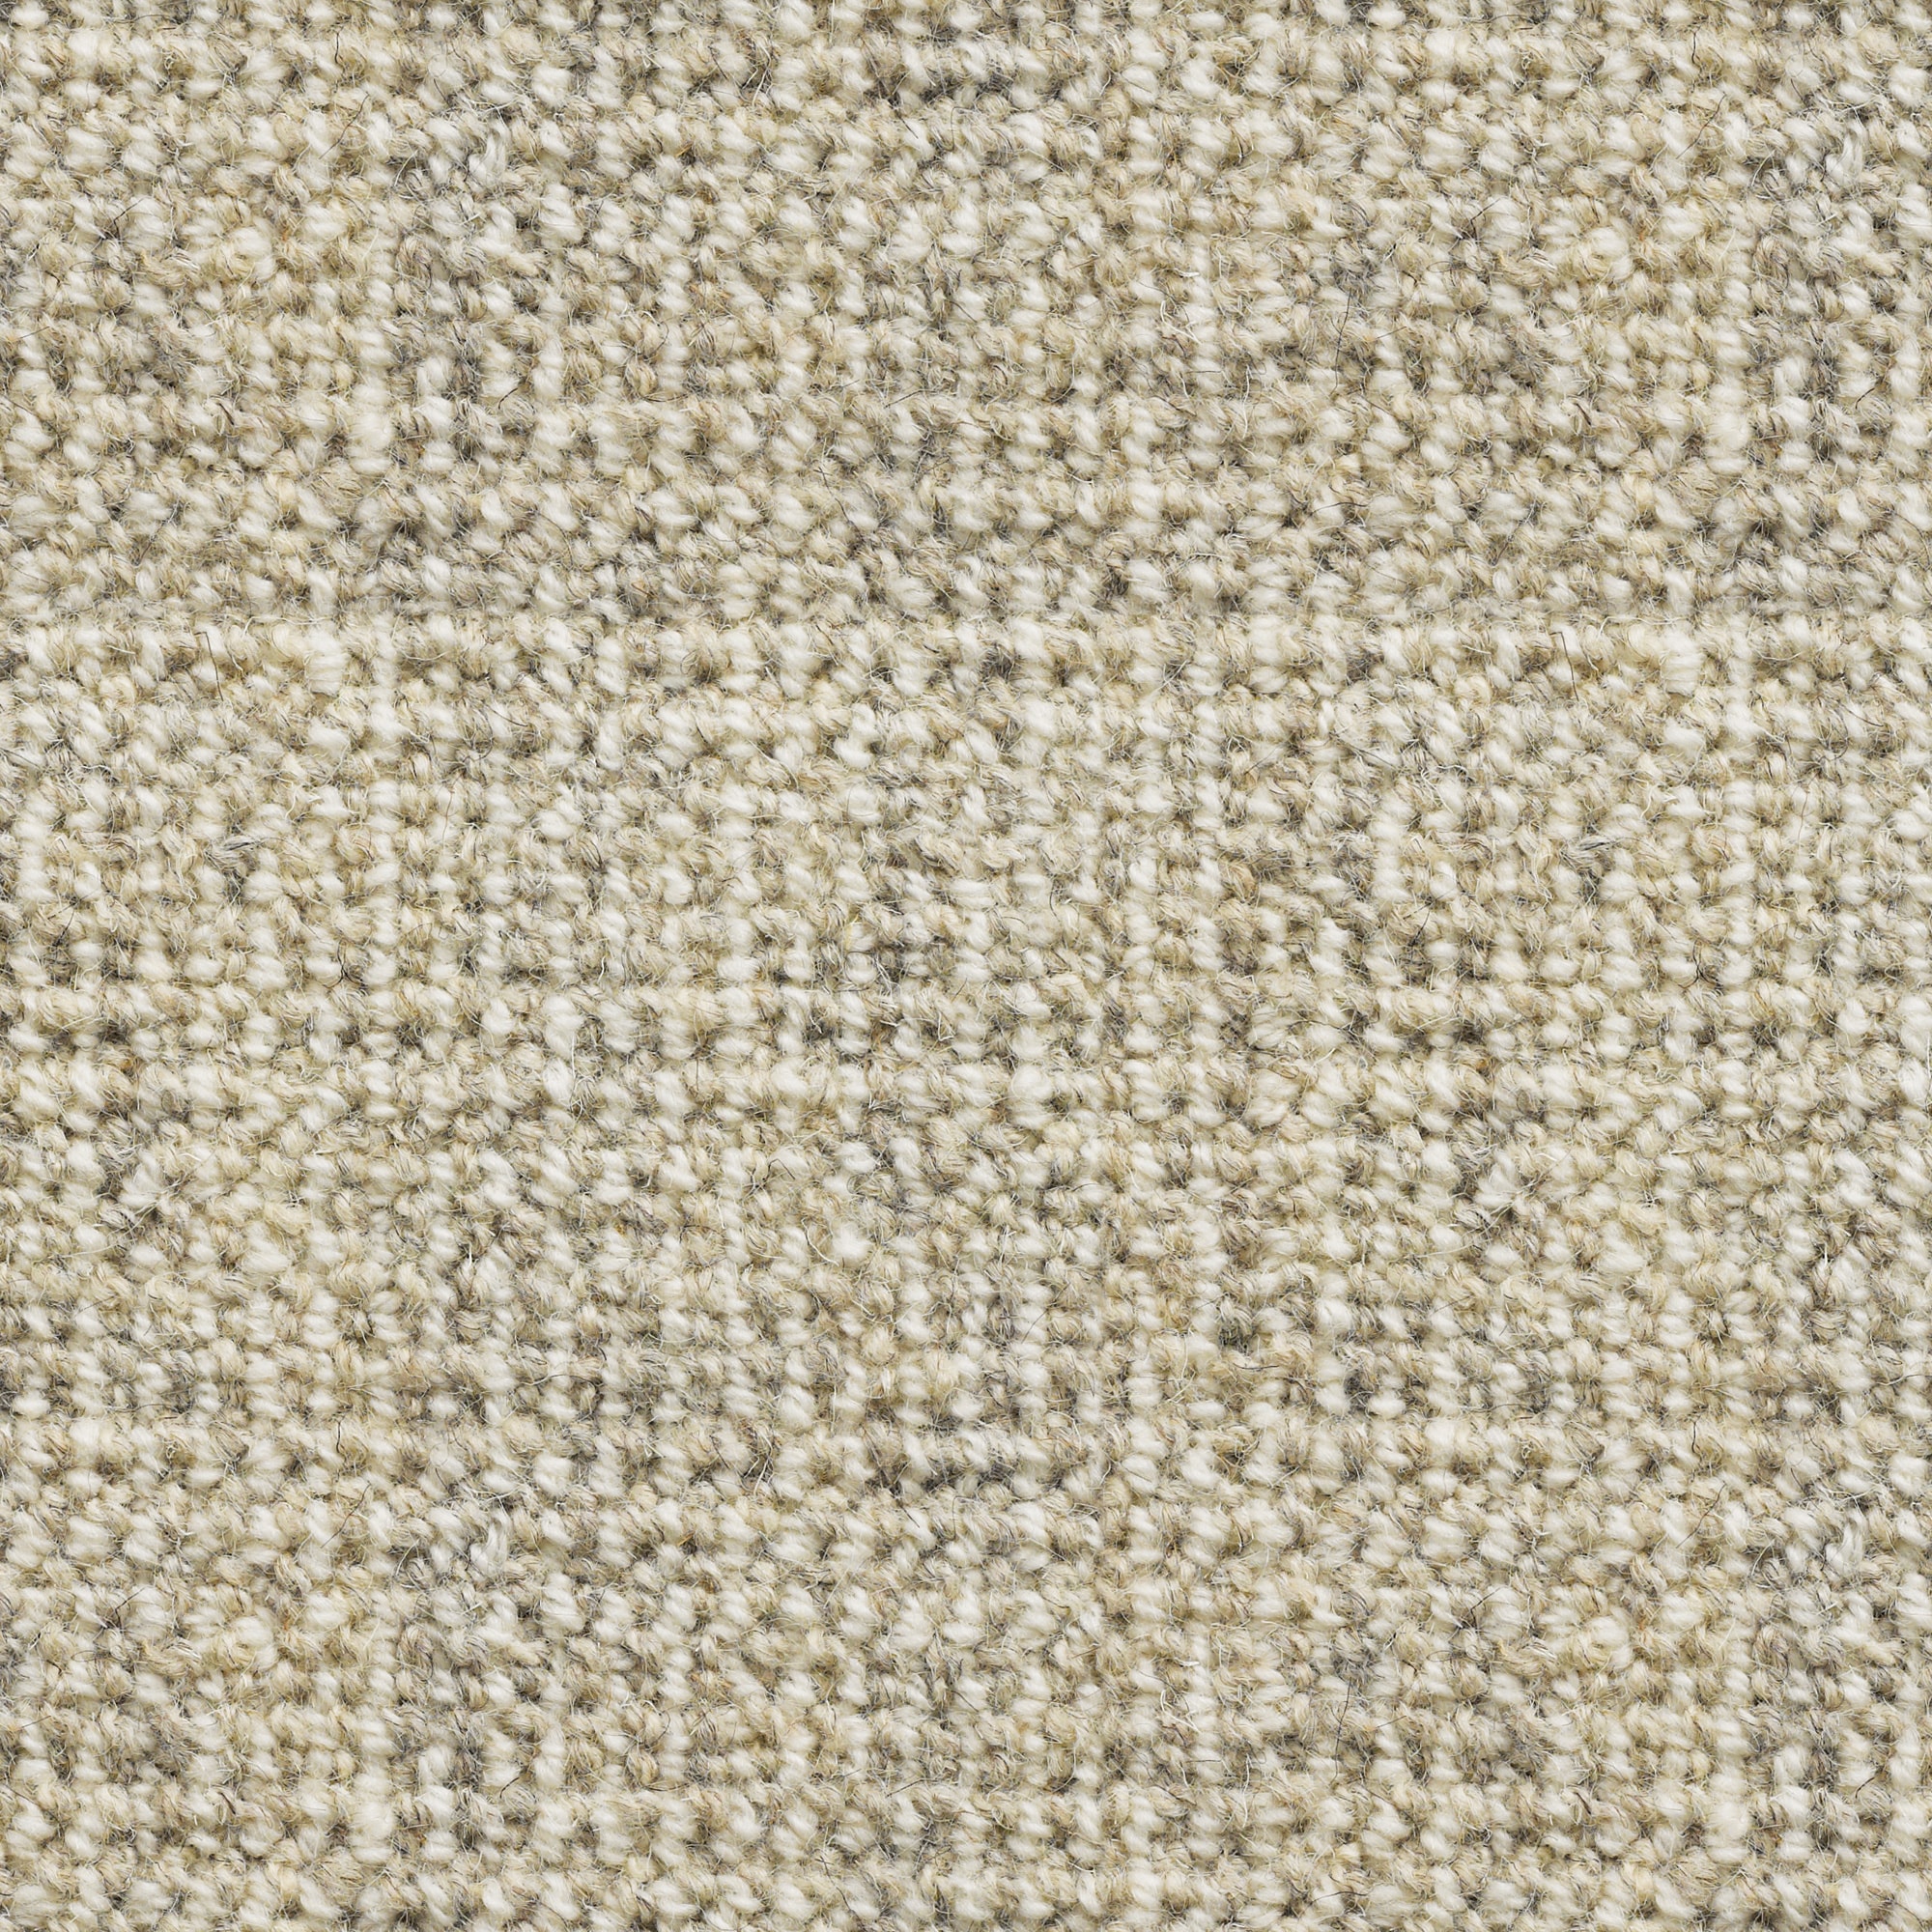 Rustic Croft: Soft Lime - 100% Wool Carpet